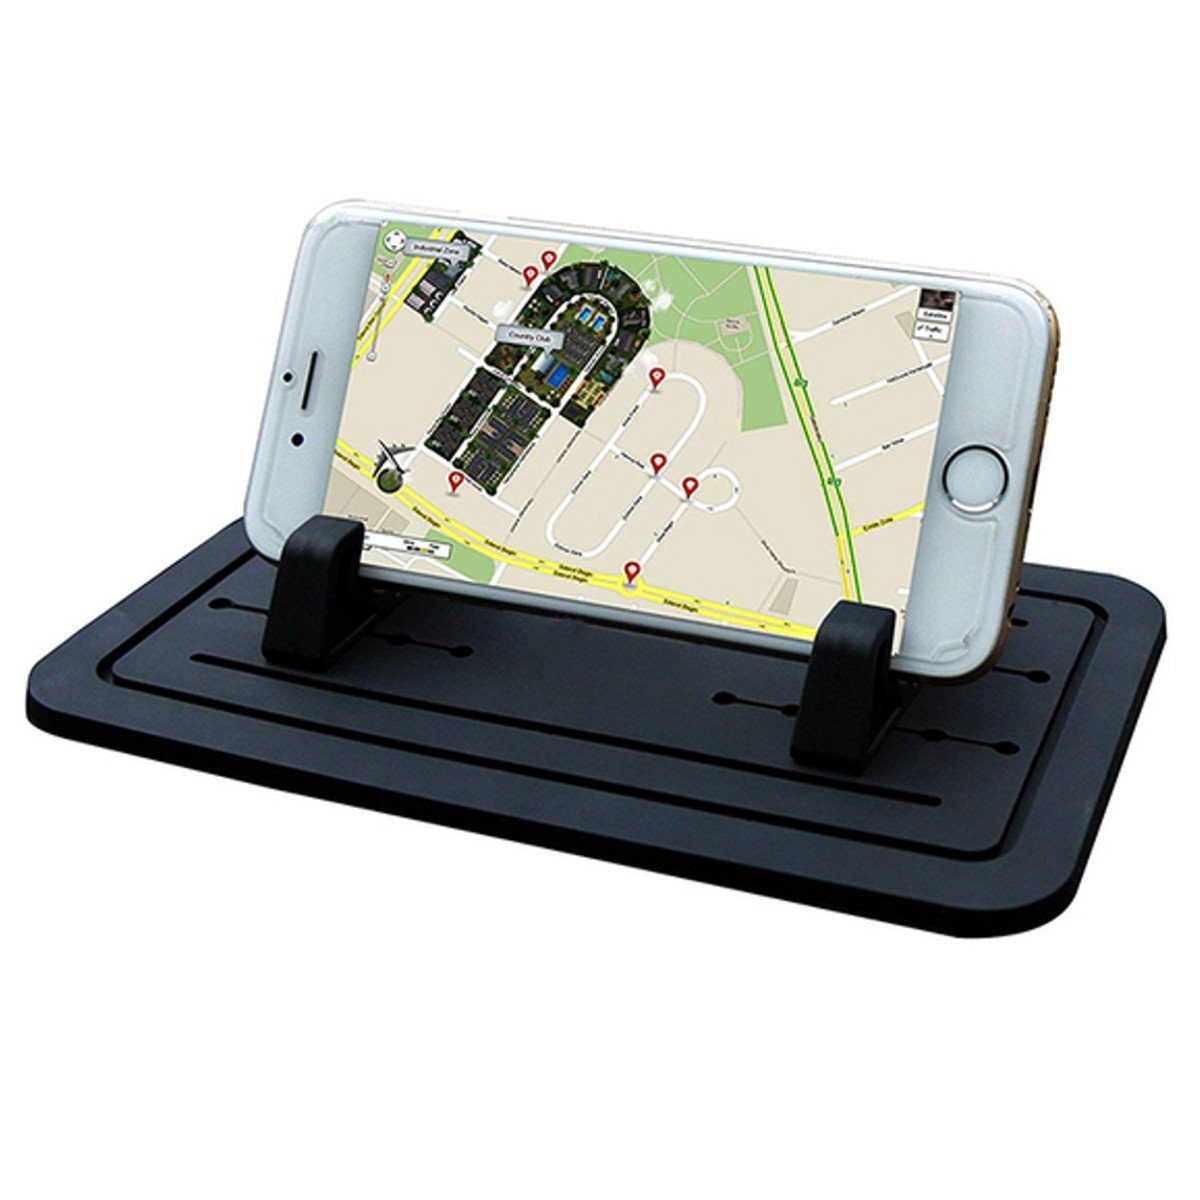 https://i.otto.de/i/otto/6395a224-8495-50d3-947a-3b2eb015253c/l-p-car-design-auto-antirutschmatte-haftpad-ablage-iphone-samsung-handy-halterung-1-stueck-3-tlg-kompatibel-mit-vielen-smartphones.jpg?$formatz$